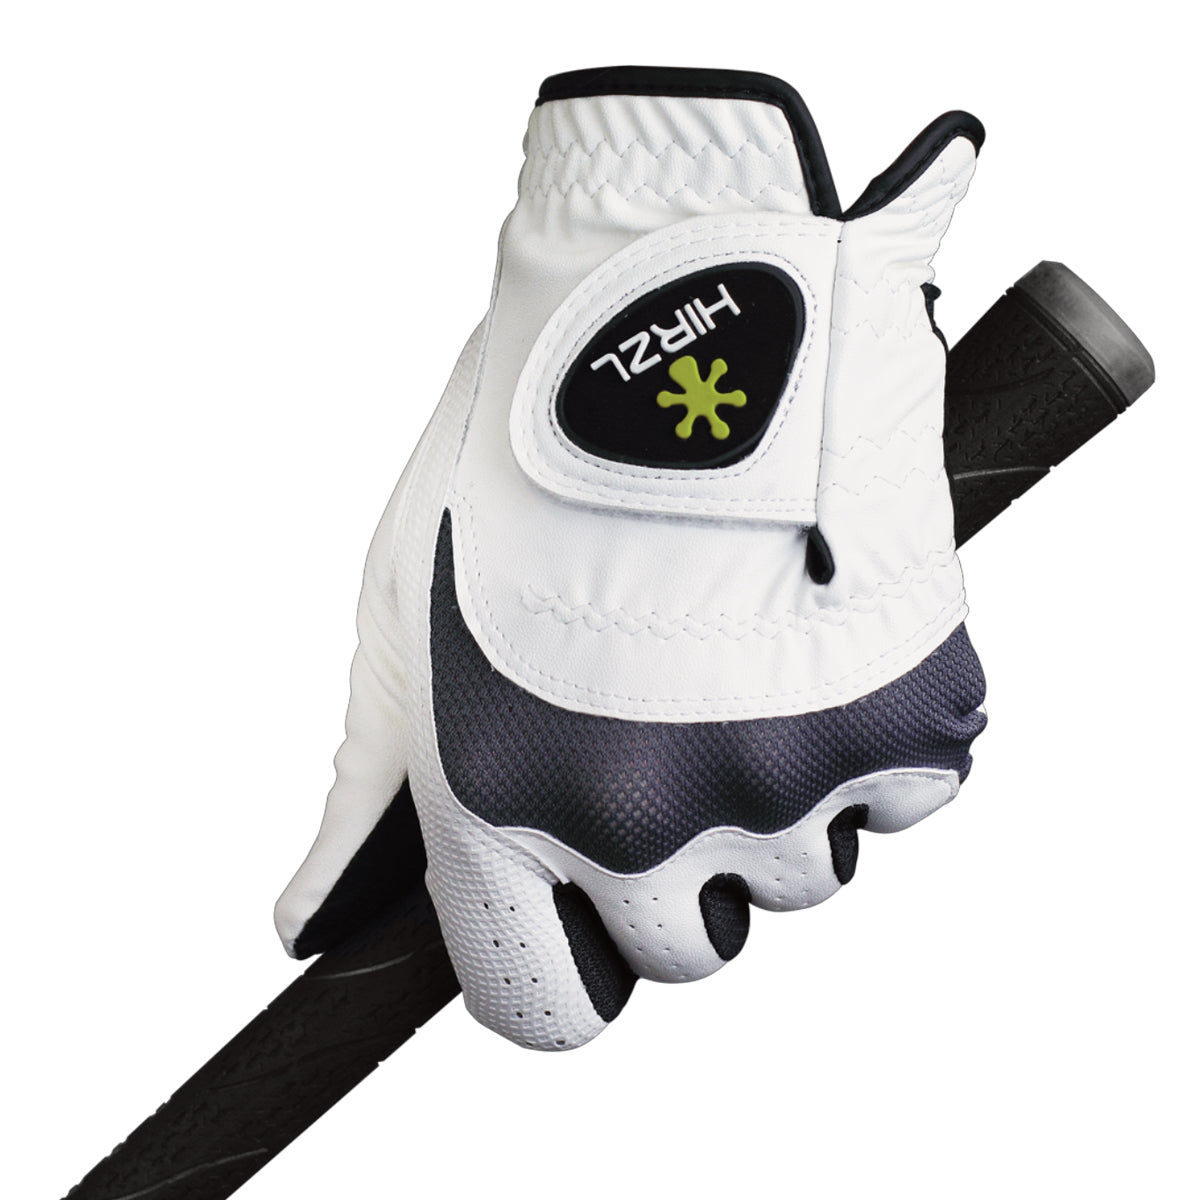 HIRZL Trust Hybrid - Golf Gloves - White / Black (Buy 3 FREE SHIP)